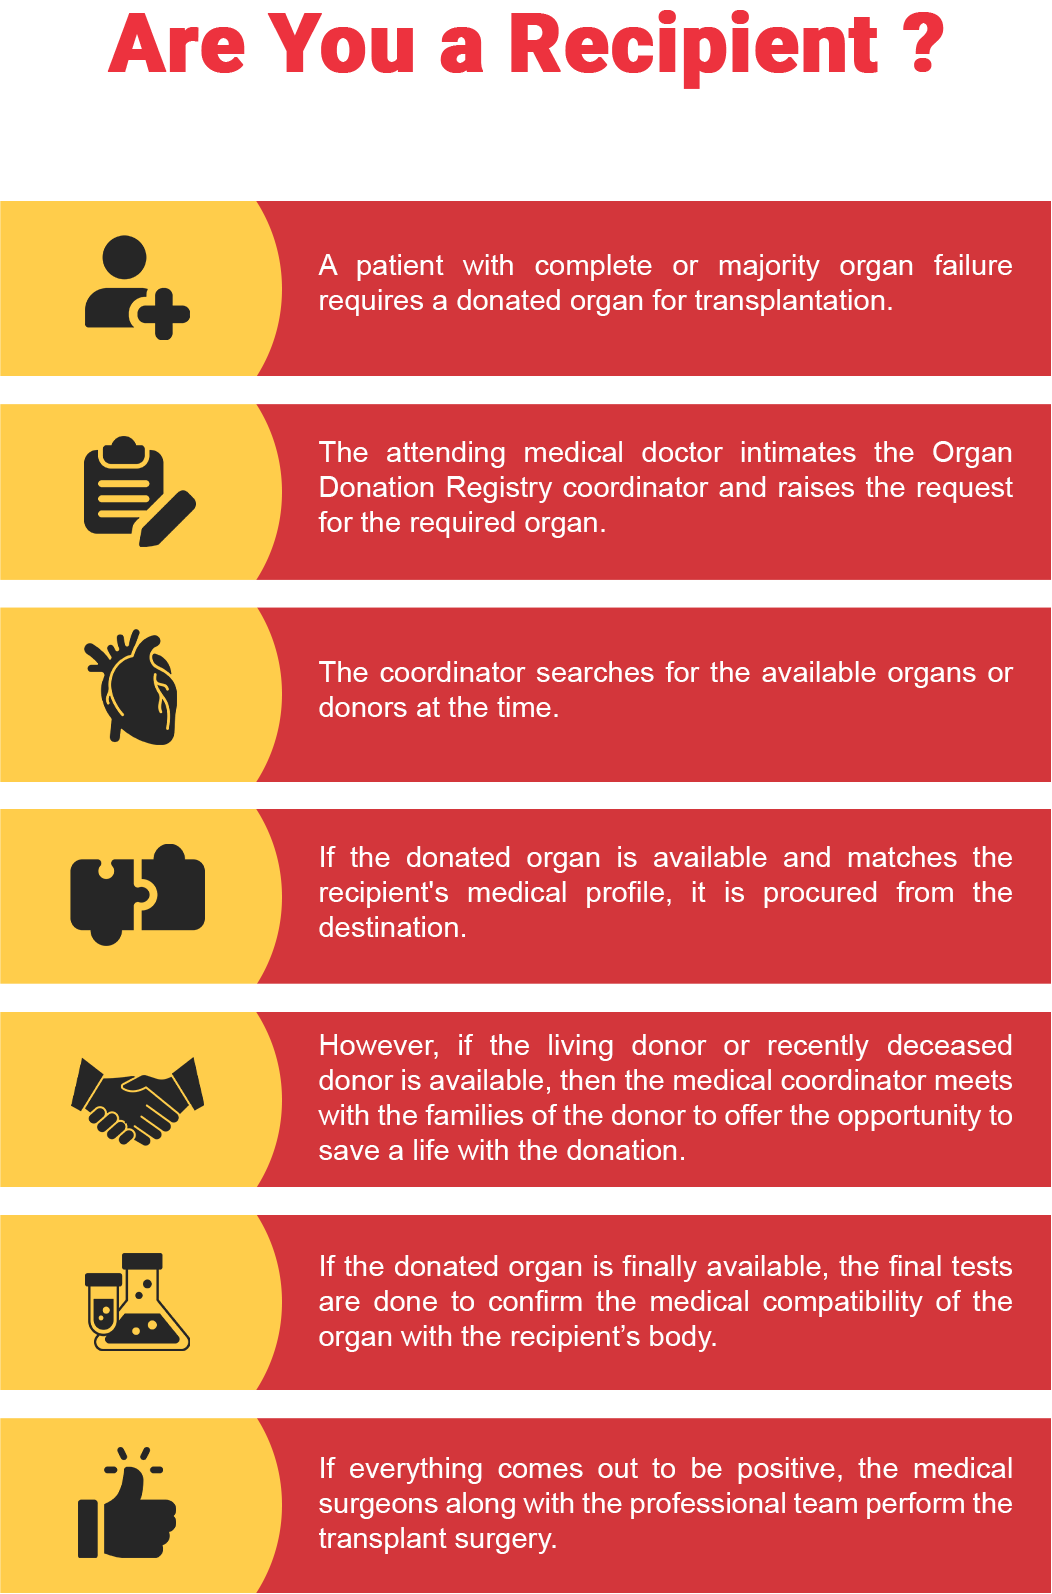 Are You a Recipient? | Organ Transplant Process